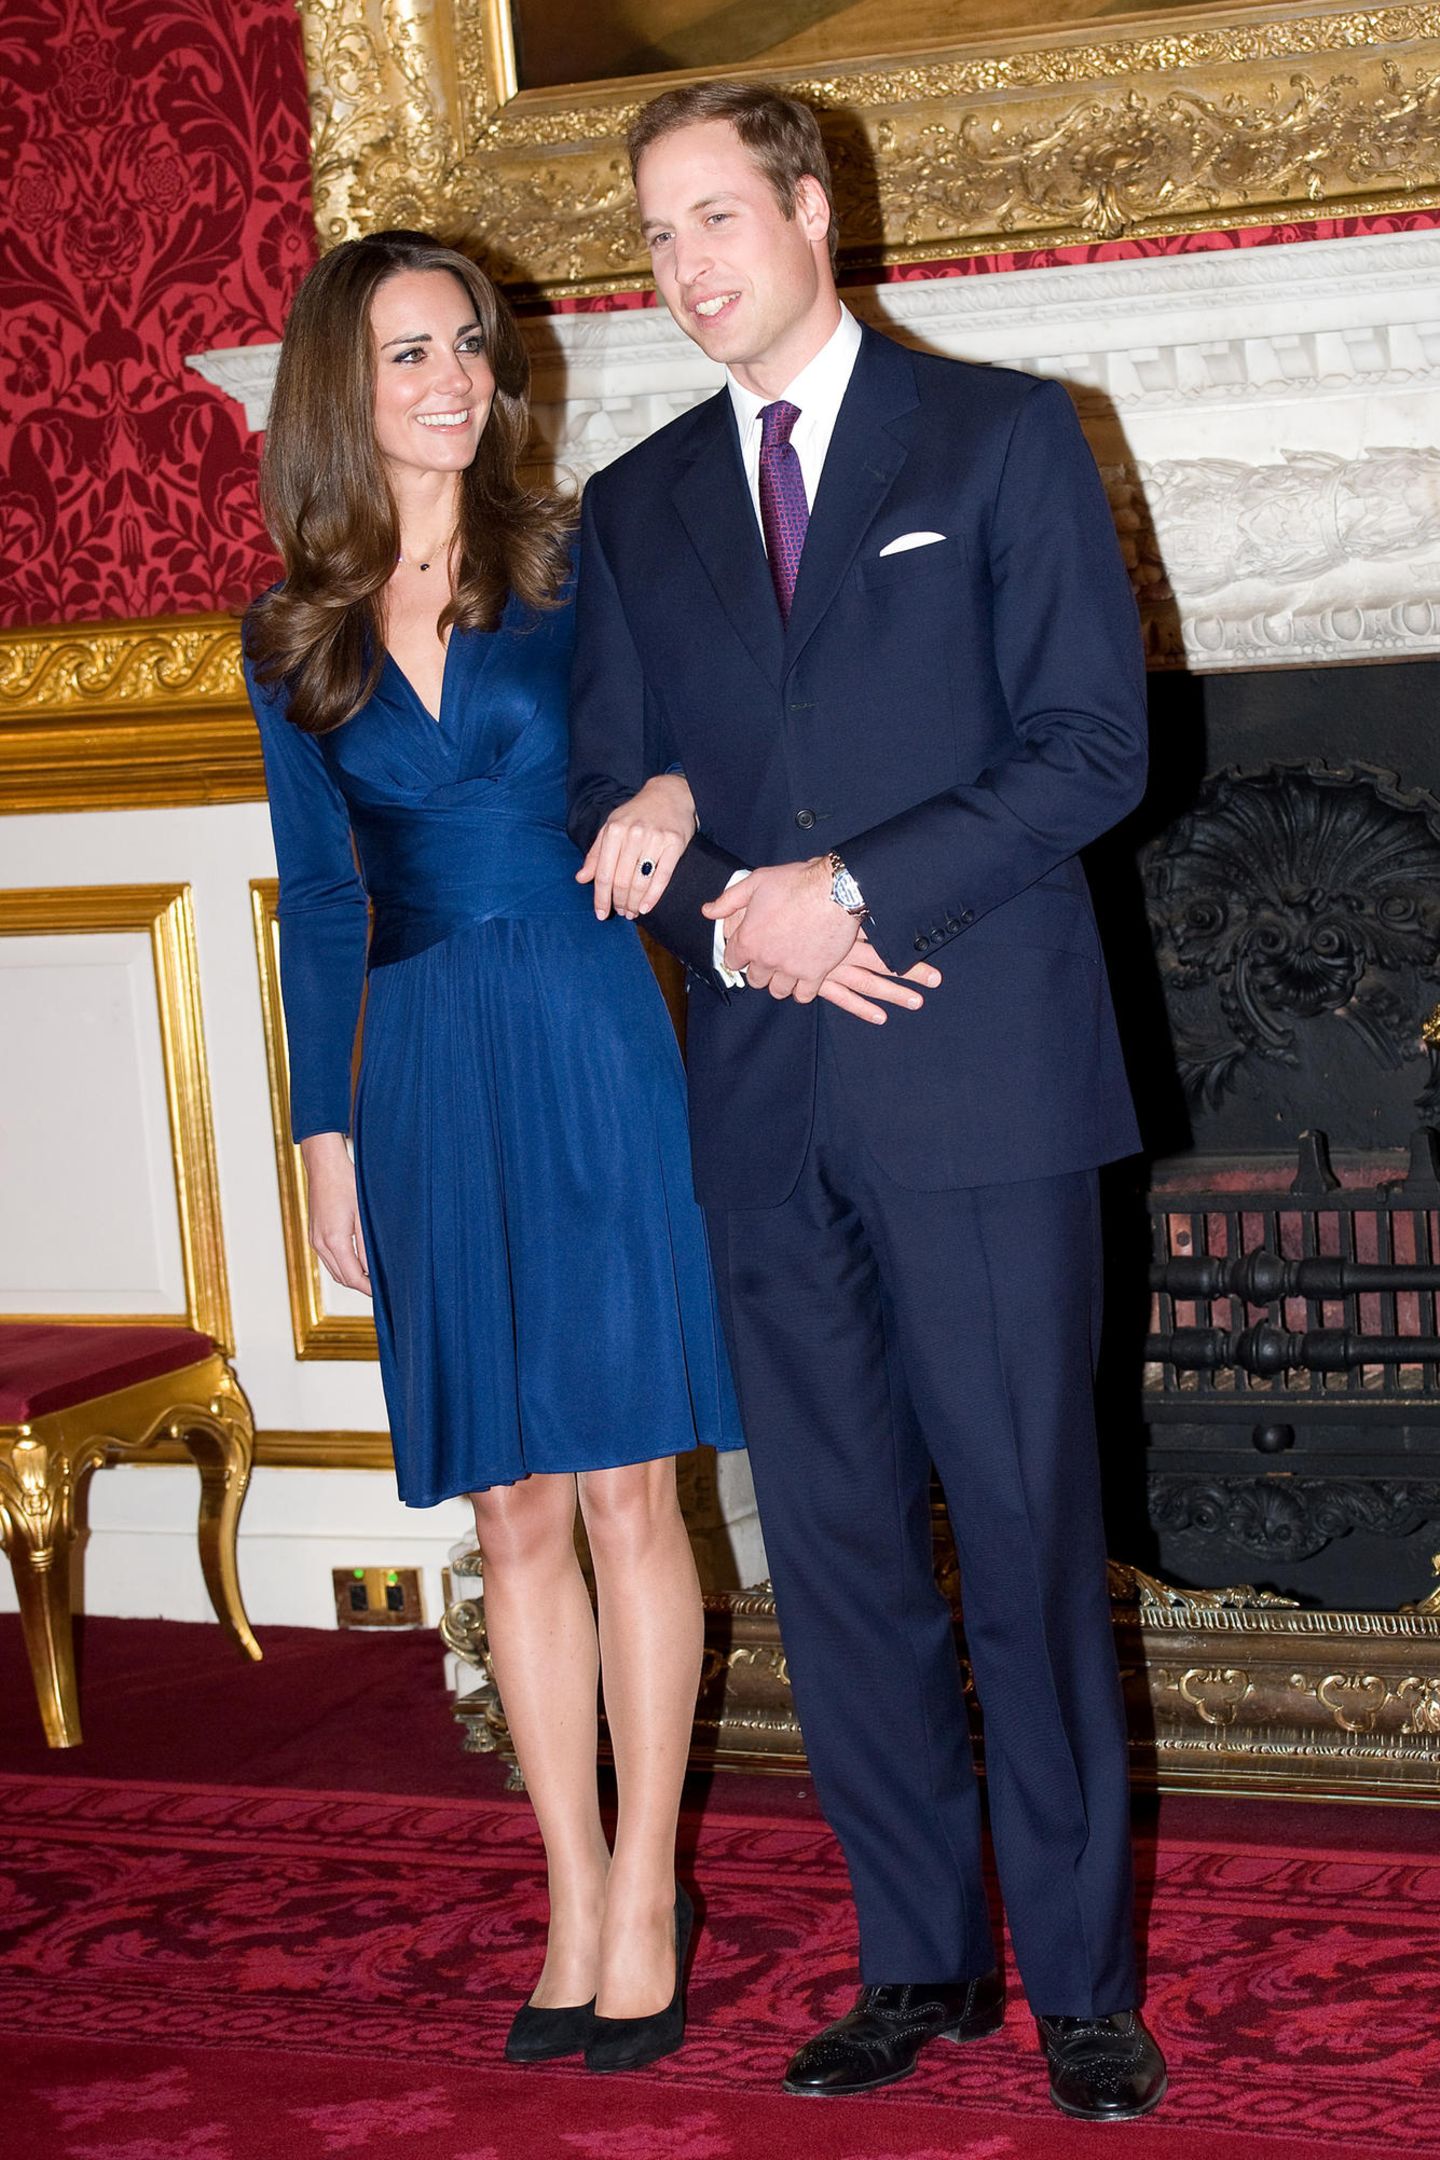 Passend zum berühmten Verlobungsring mit großem Saphir strahlte Kate Middleton bei Bekanntgabe ihrer Verlobung am 16. November 2010 in diesem blauen Dress von Issa, das binnen kürzester Zeit vergriffen war. Und auch Prinz William hatte sich, wie jetzt sein Bruder Harry für einen blauen Anzug entschieden.